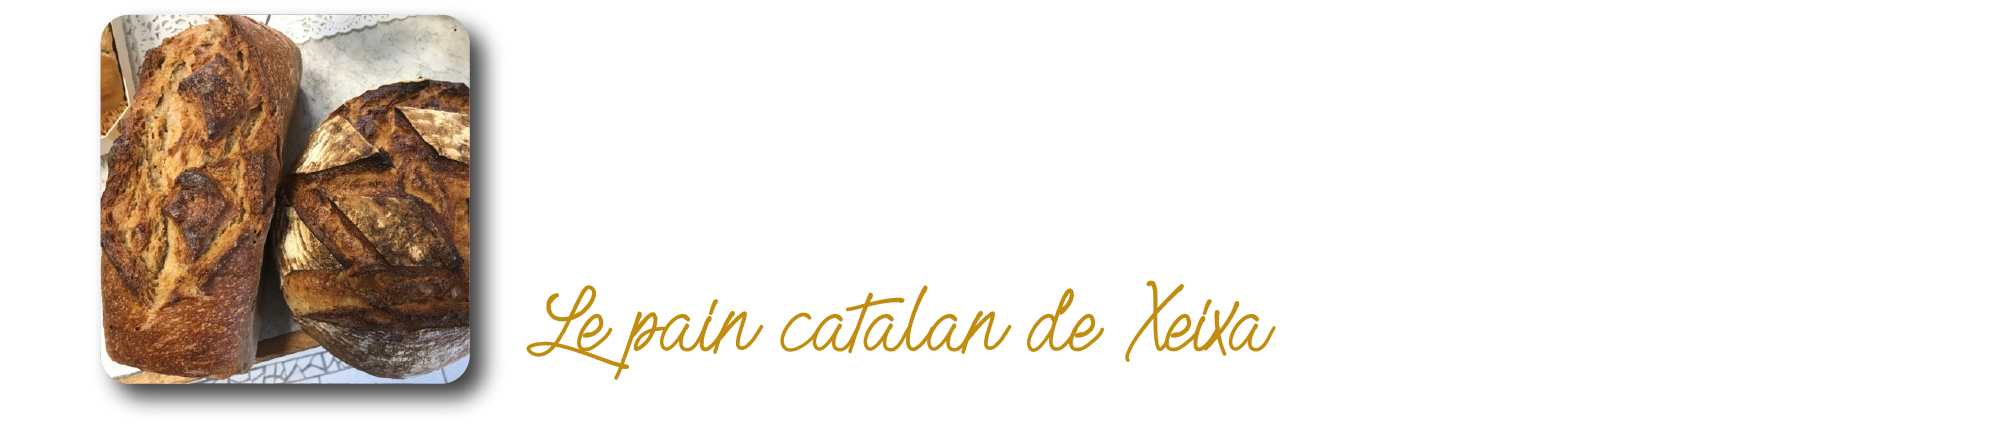 Le pain catalan de Xeixa